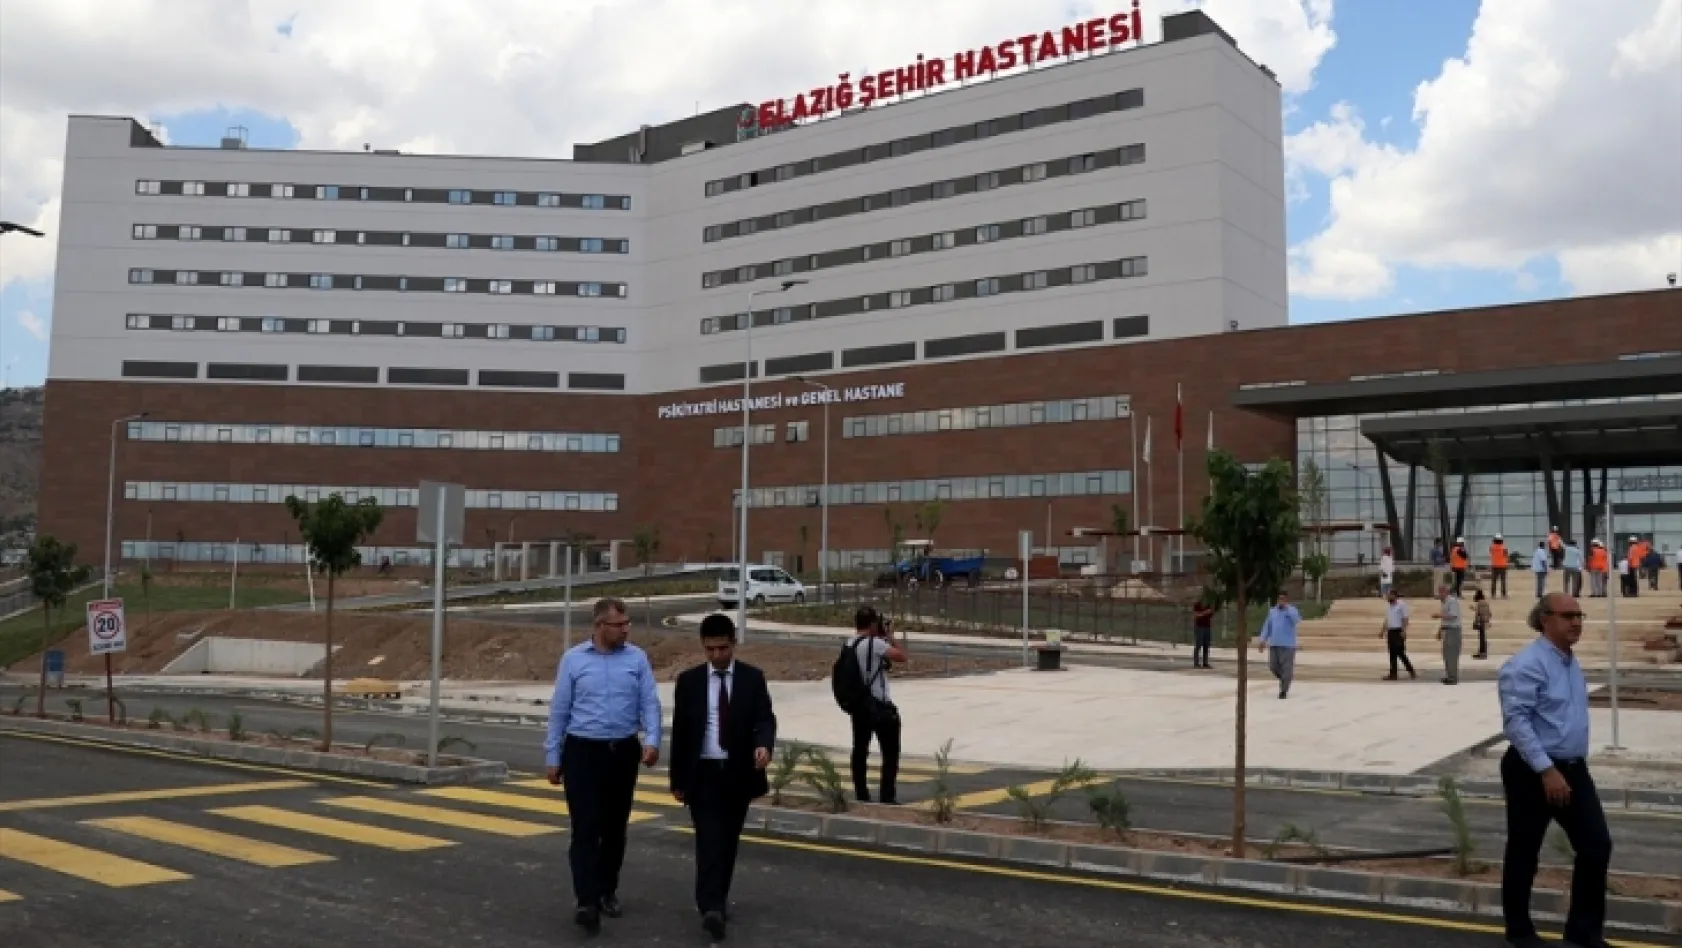 Elazığ Şehir Hastanesi 1 Ağustos'ta açılıyor